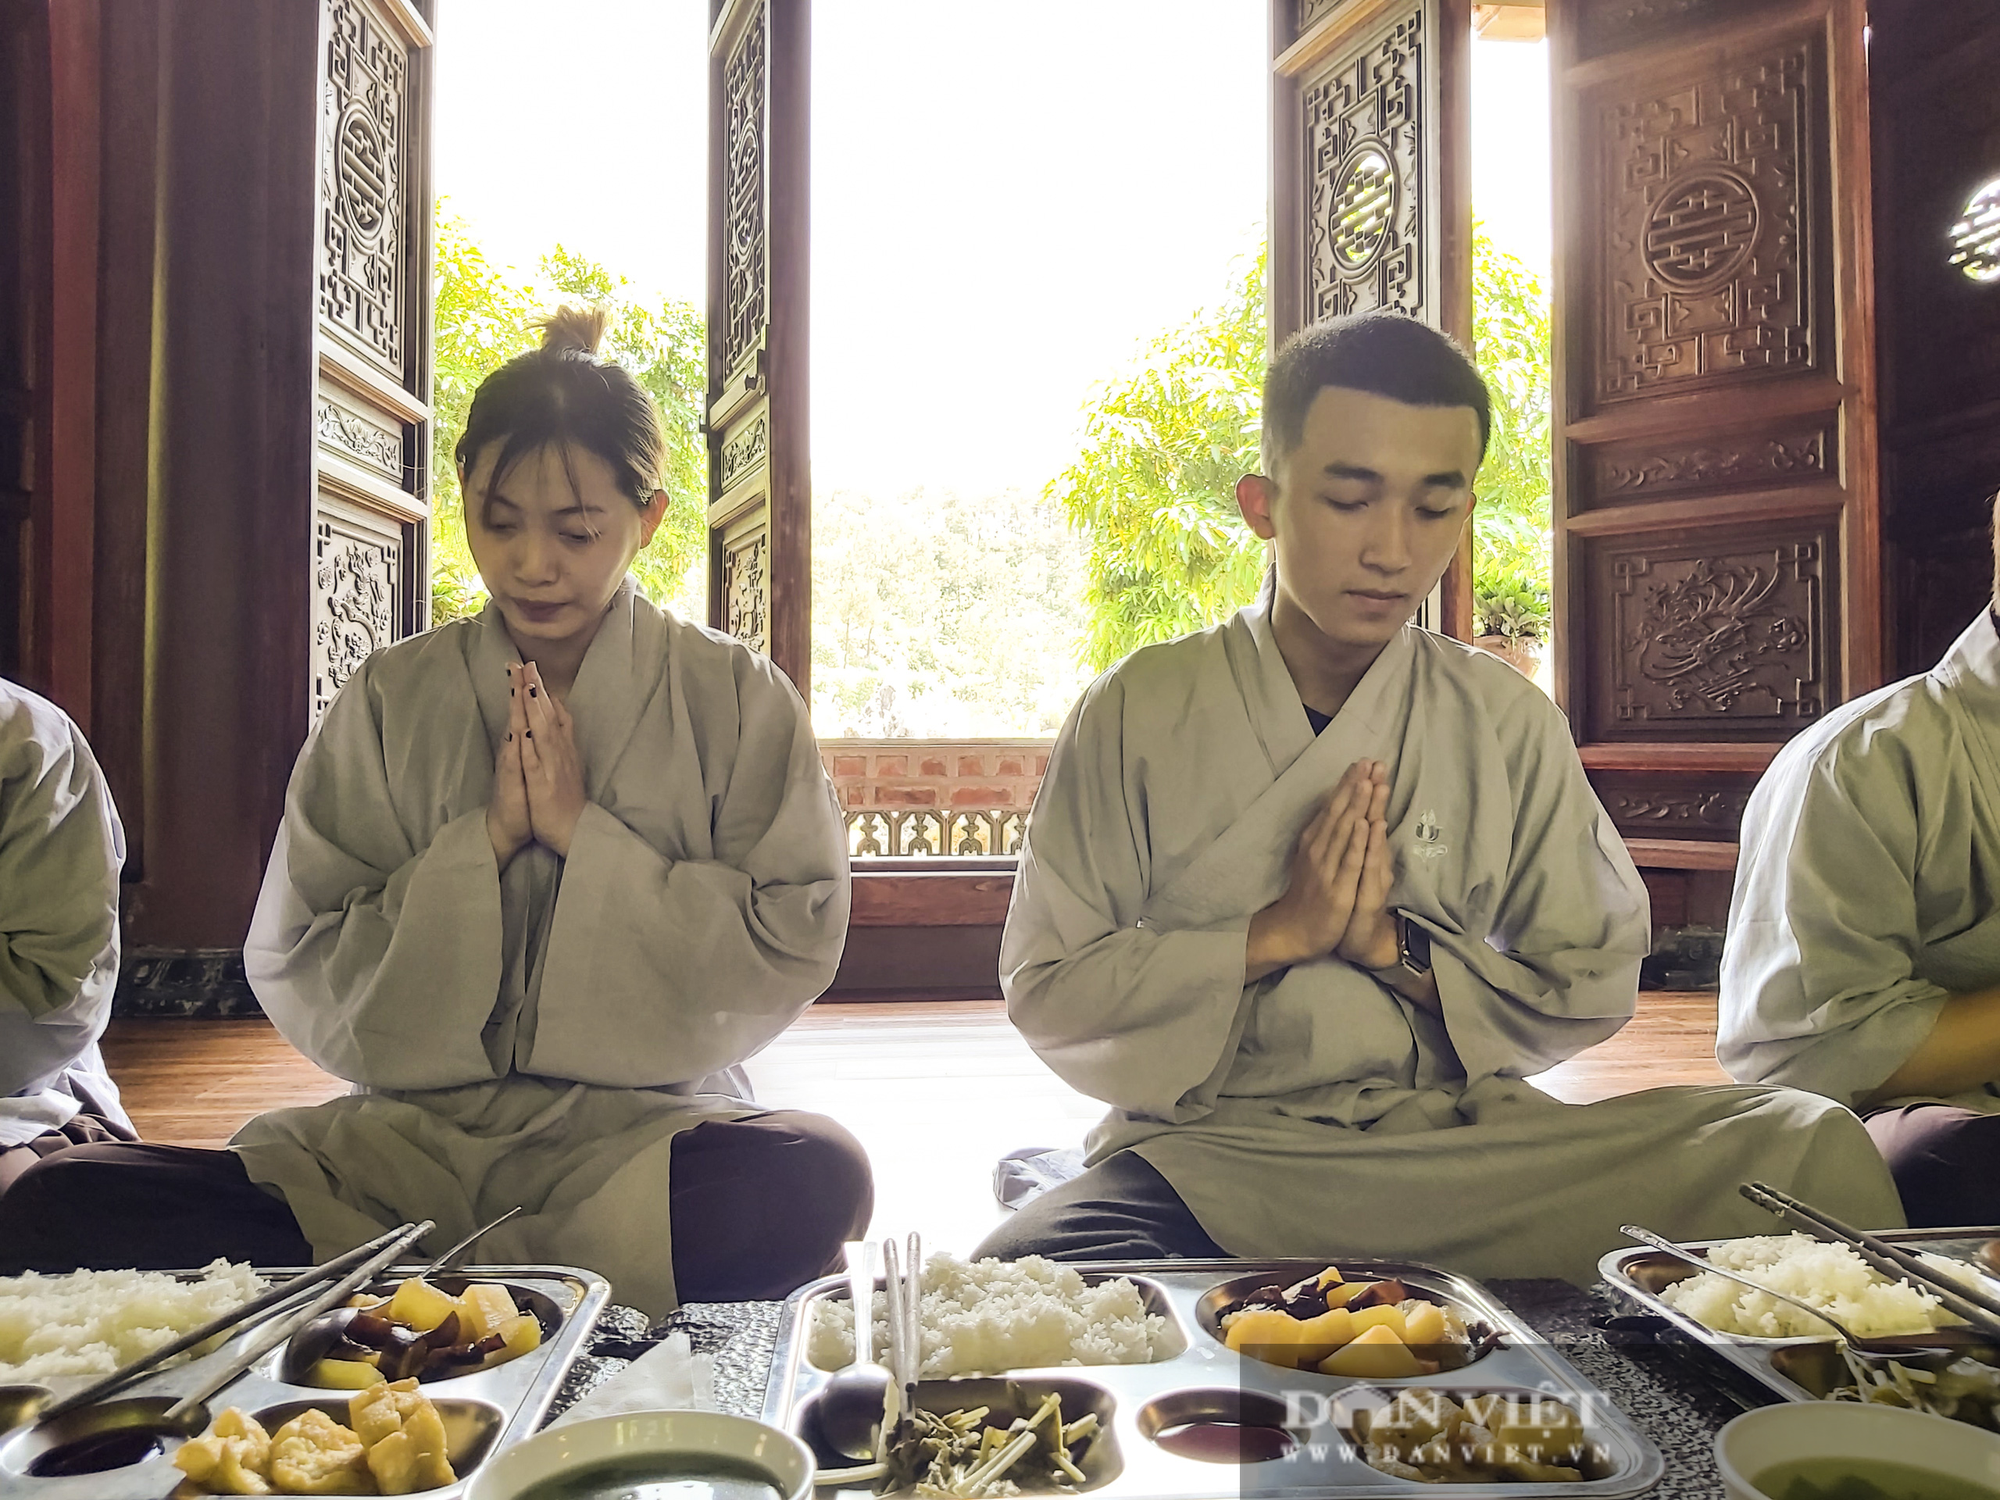 Chùa Địa Tạng Phi Lai: Khi người trẻ "thoát tục", trưởng thành và ngày càng yêu mến đạo Phật - Ảnh 12.